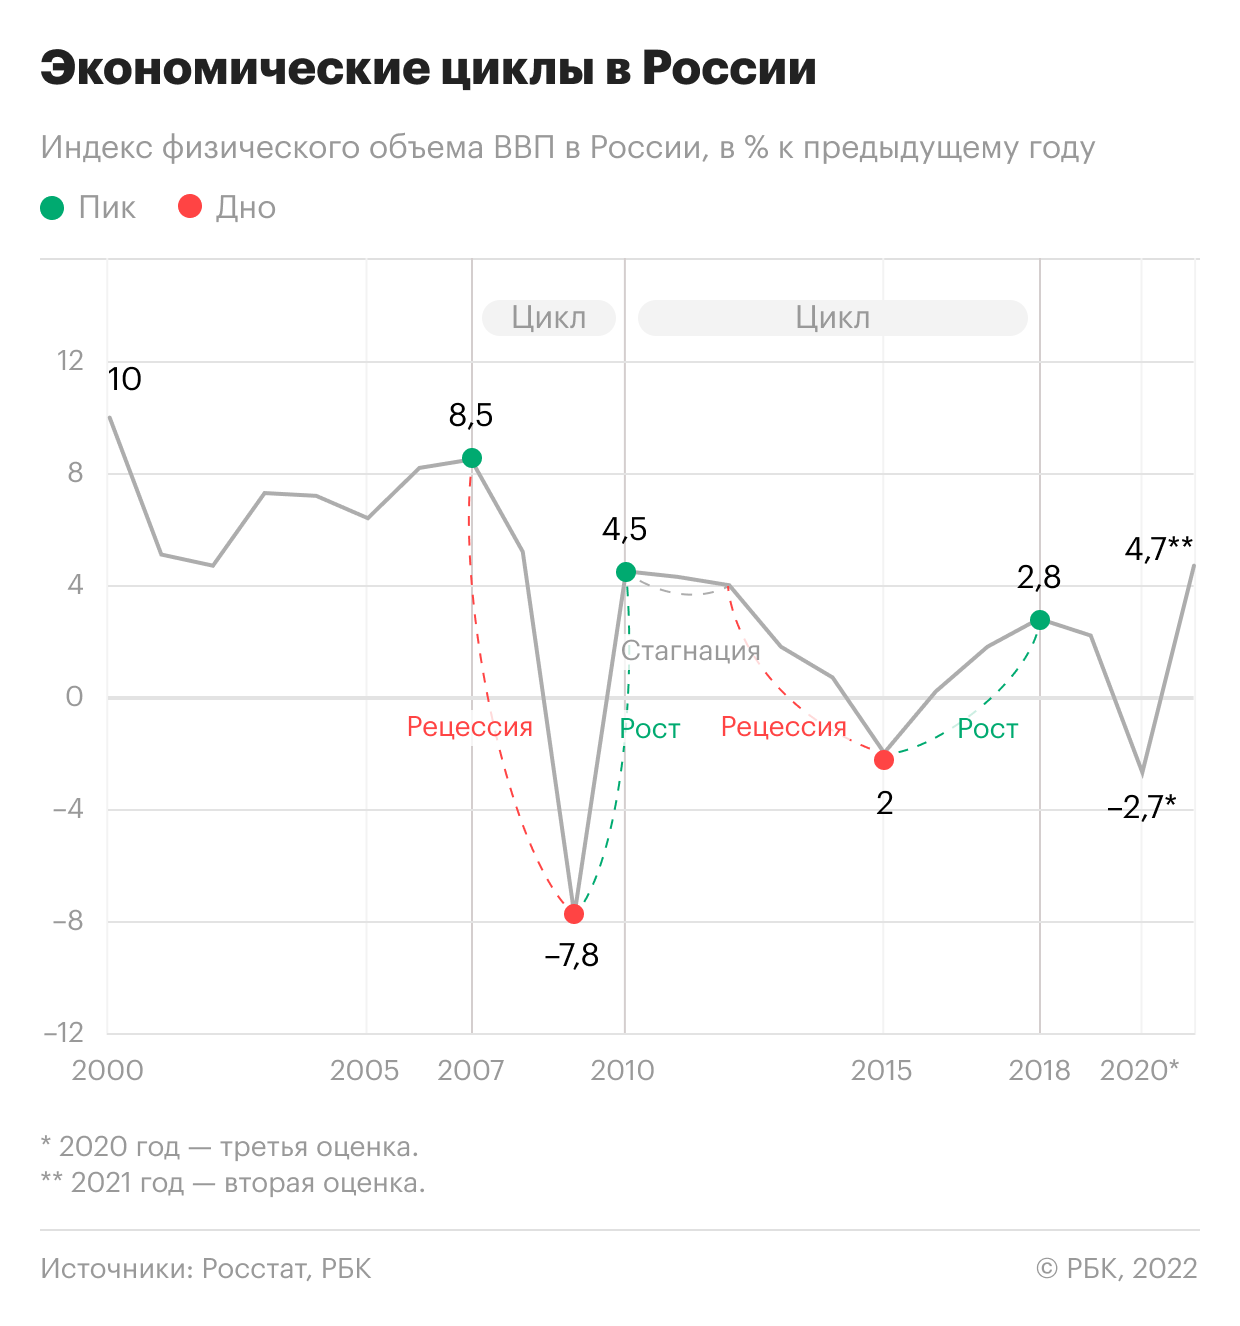 Экономические циклы на примере индекса физического объема ВВП России. В 2011 и 2012 годах была зафиксирована стагнация —  ВВП был на уровнях 4,3% и 4,0% соответственно. В 2013 году стагнация перешла в рецессию